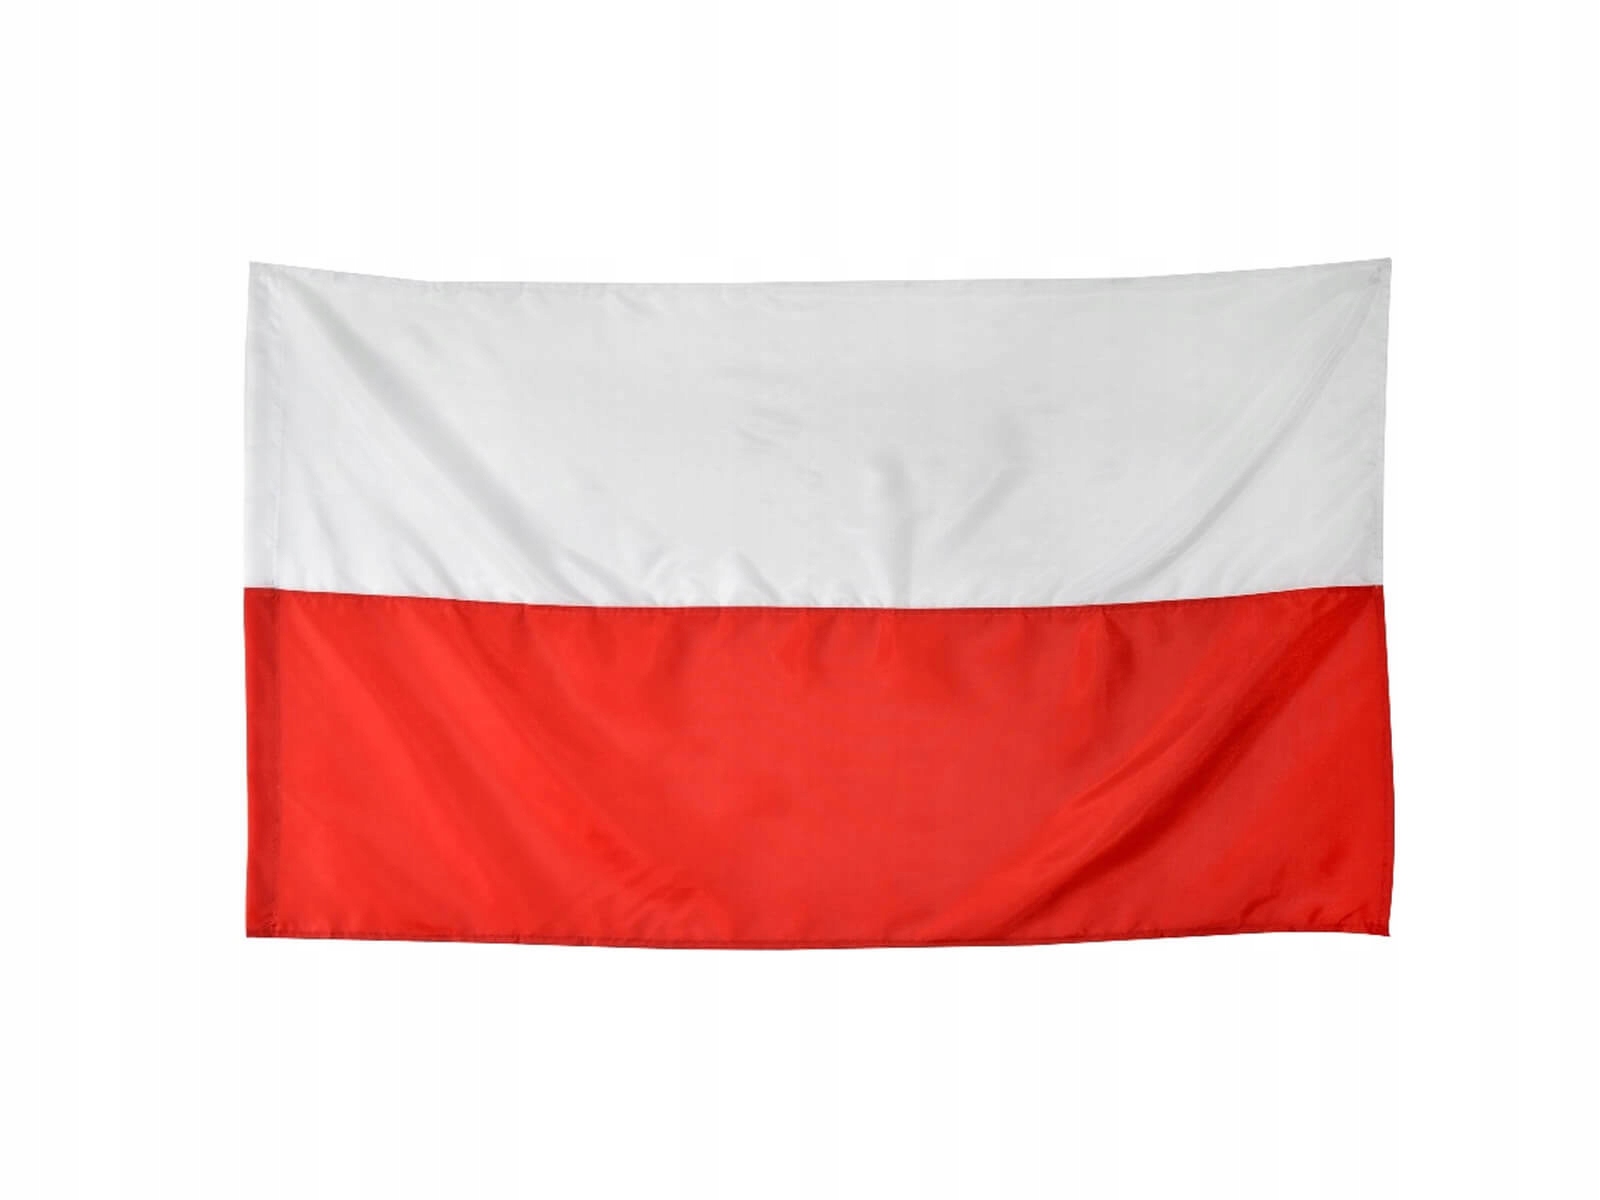 Flaga narodowa Polski 68x110cm Polska